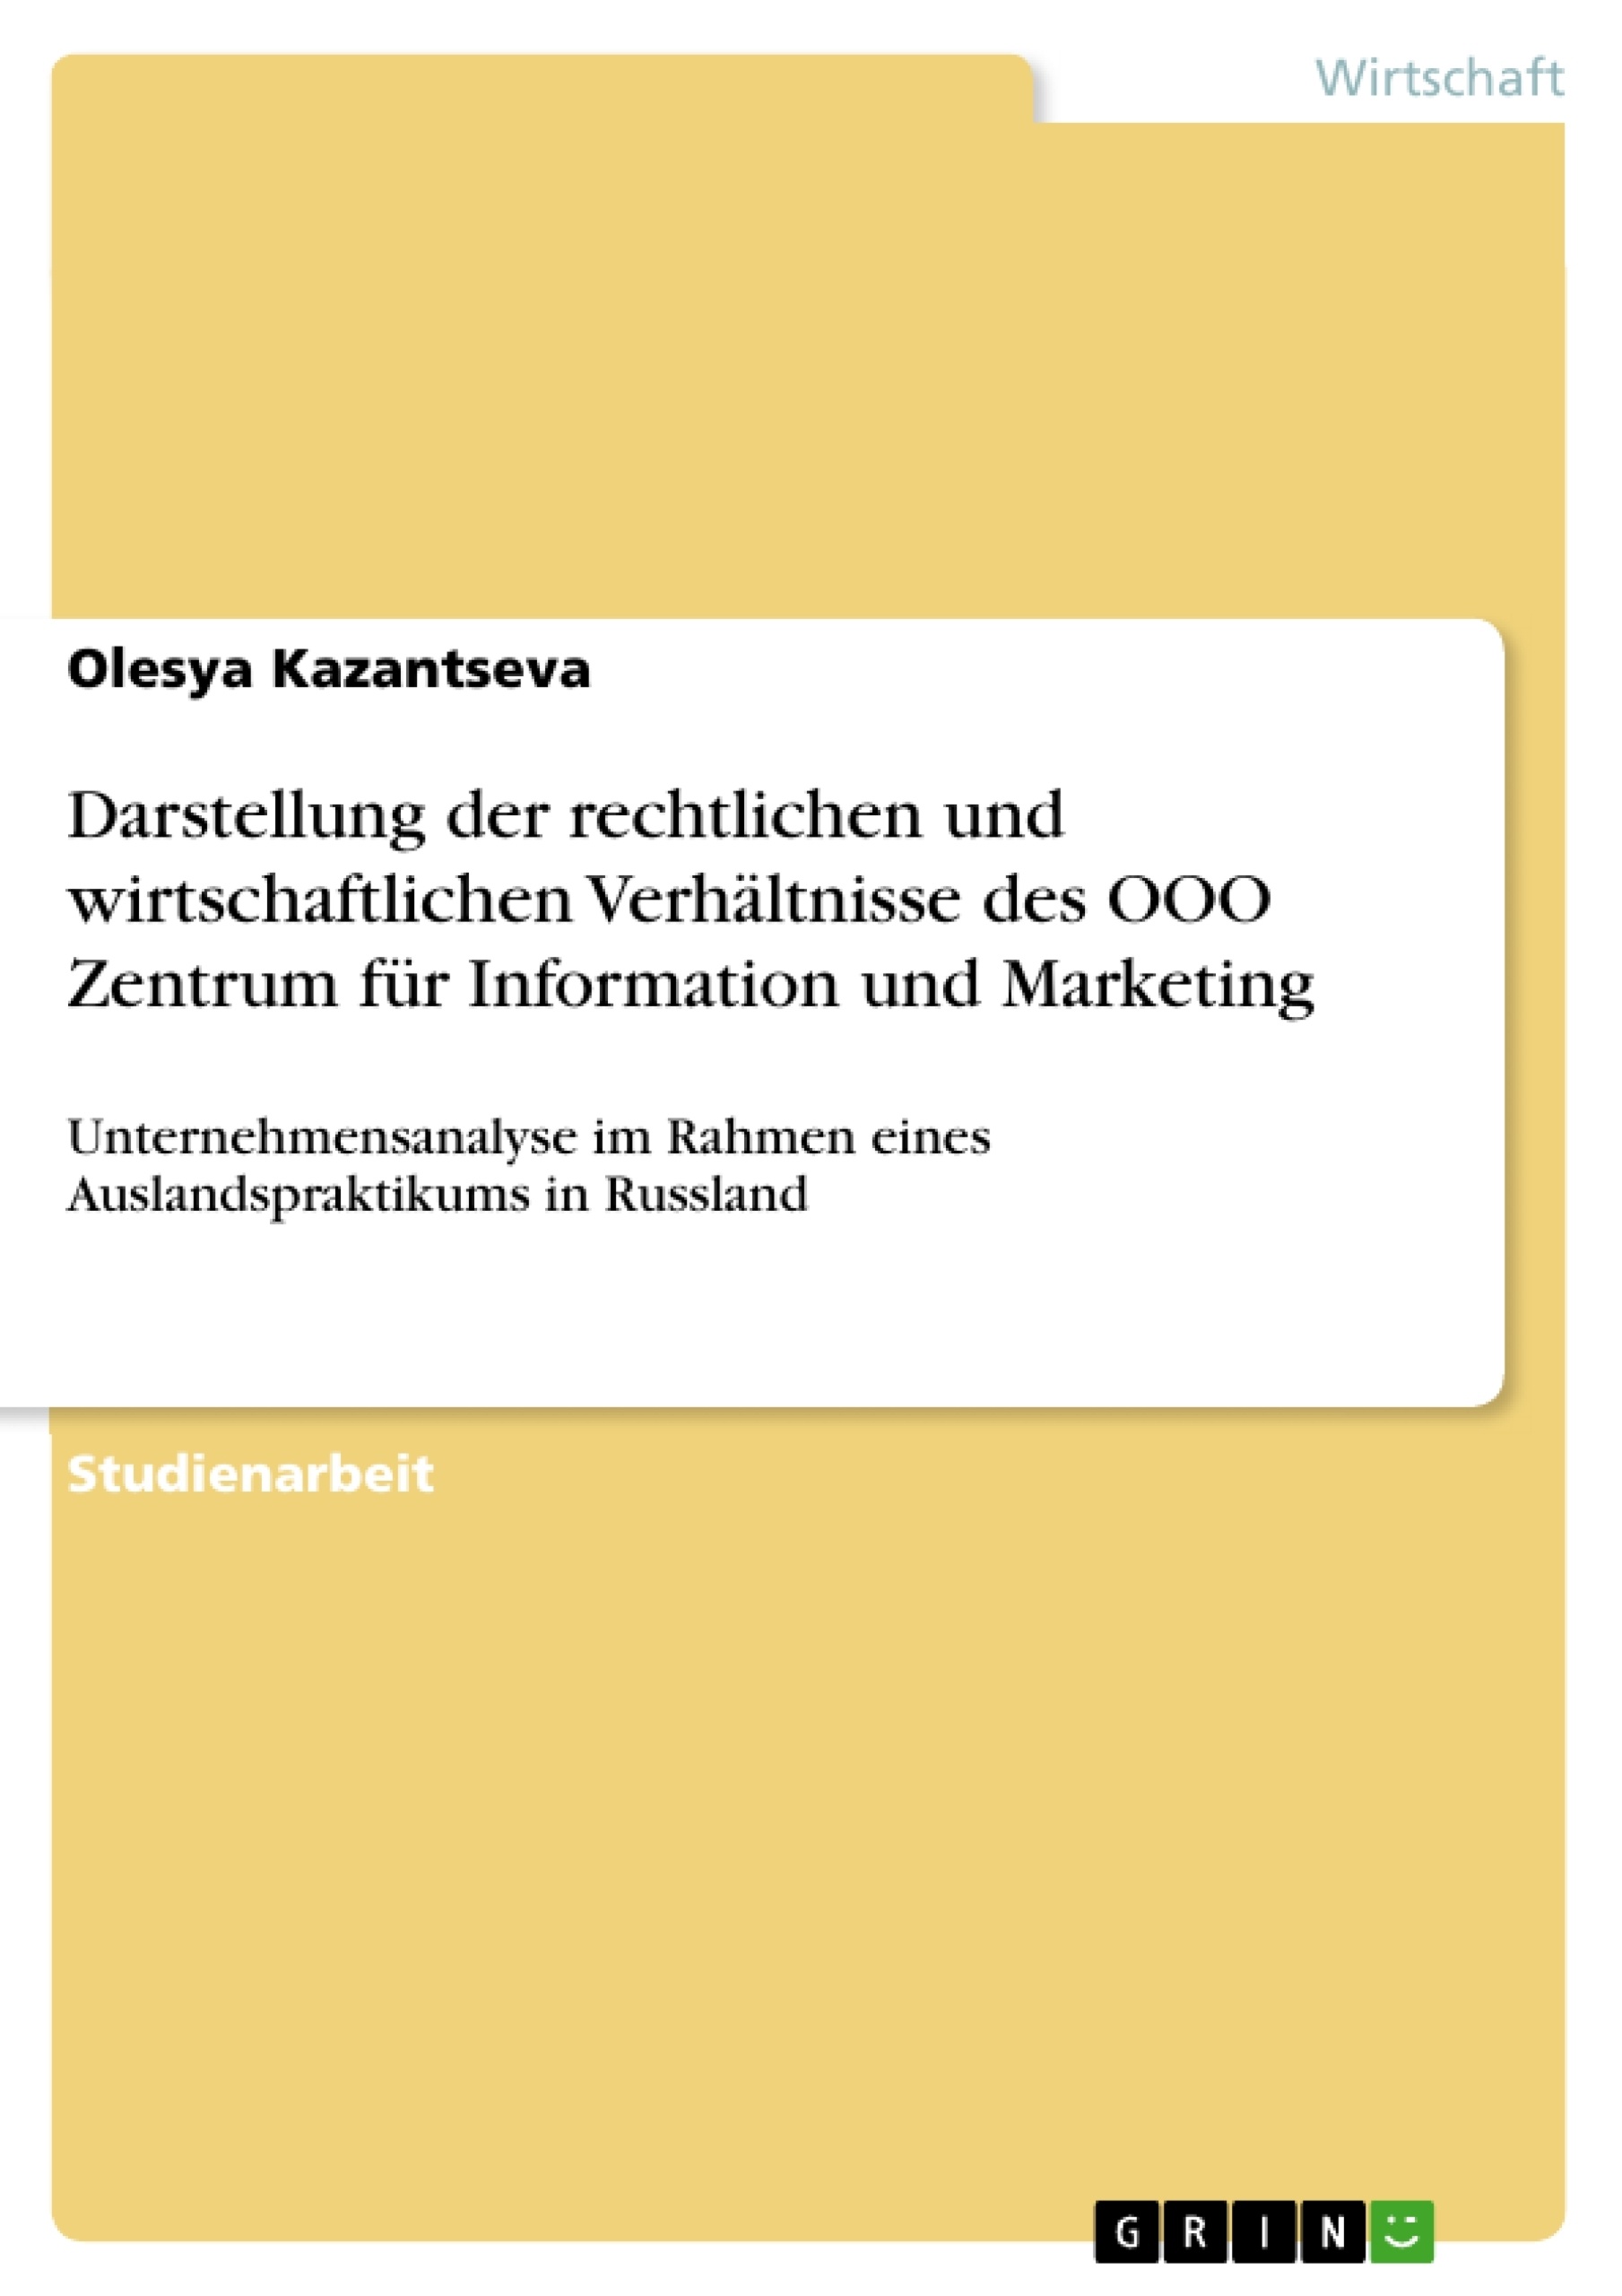 Title: Darstellung der rechtlichen und wirtschaftlichen Verhältnisse des OOO Zentrum für Information und Marketing